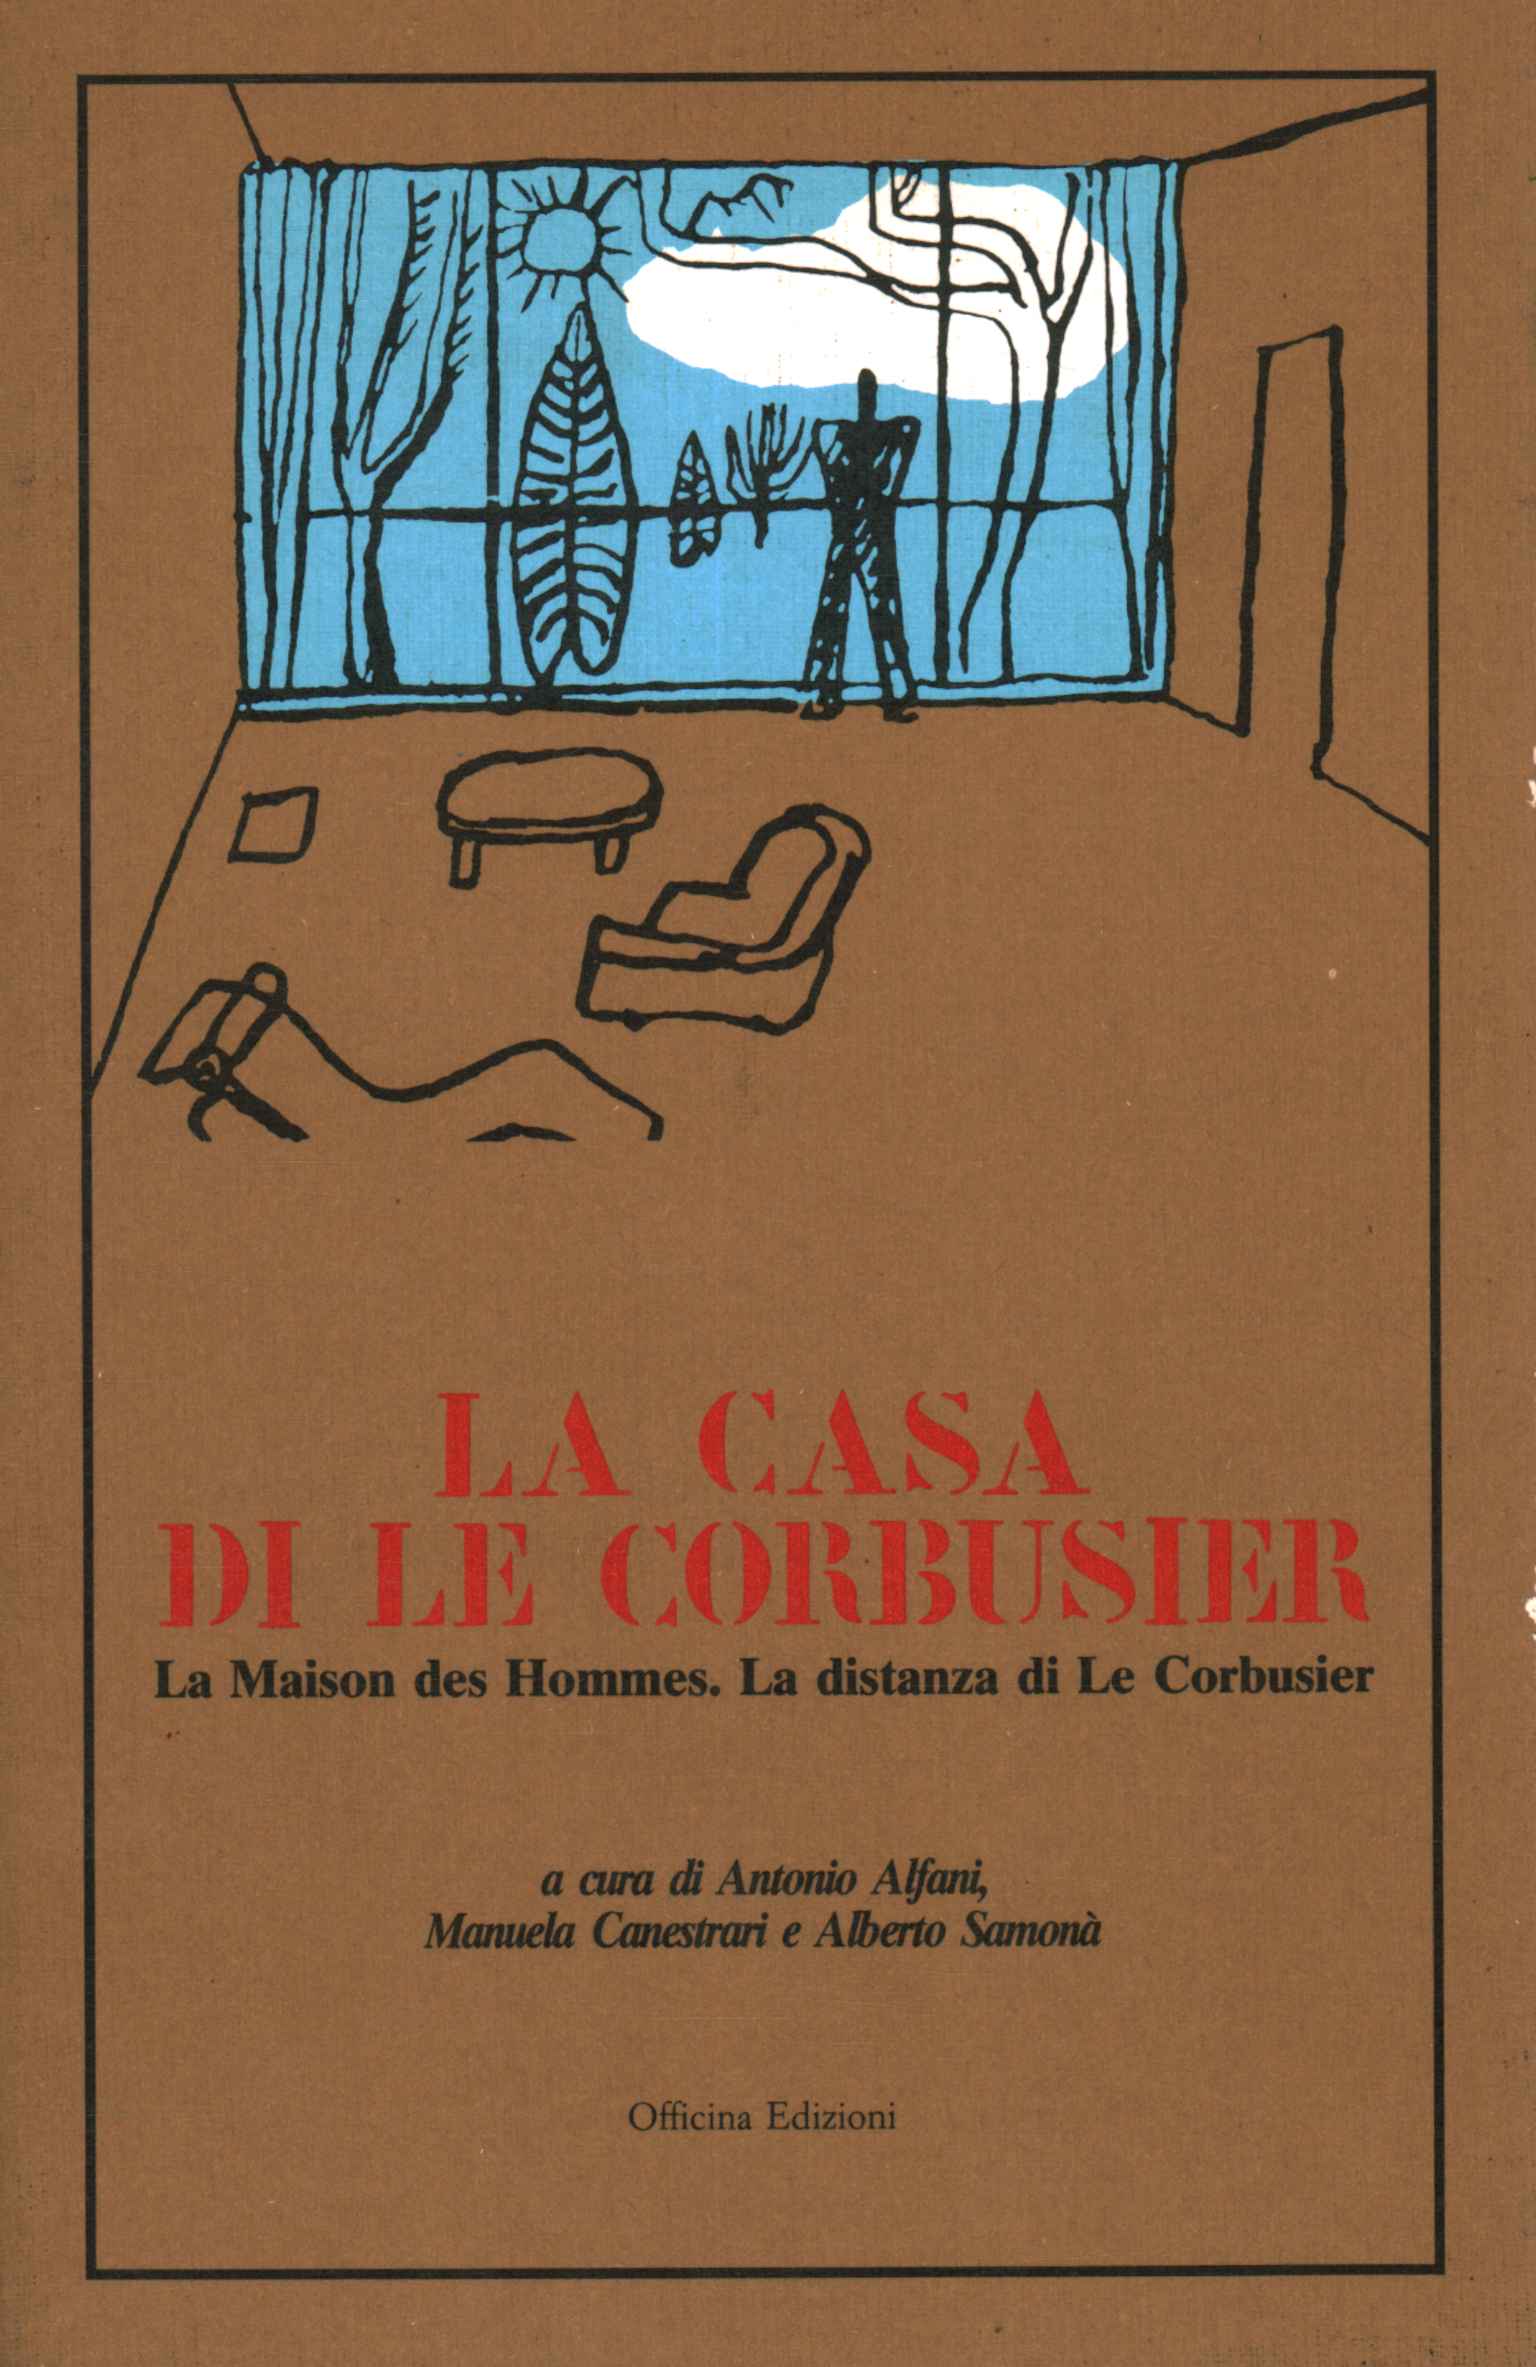 Le Corbusier's house